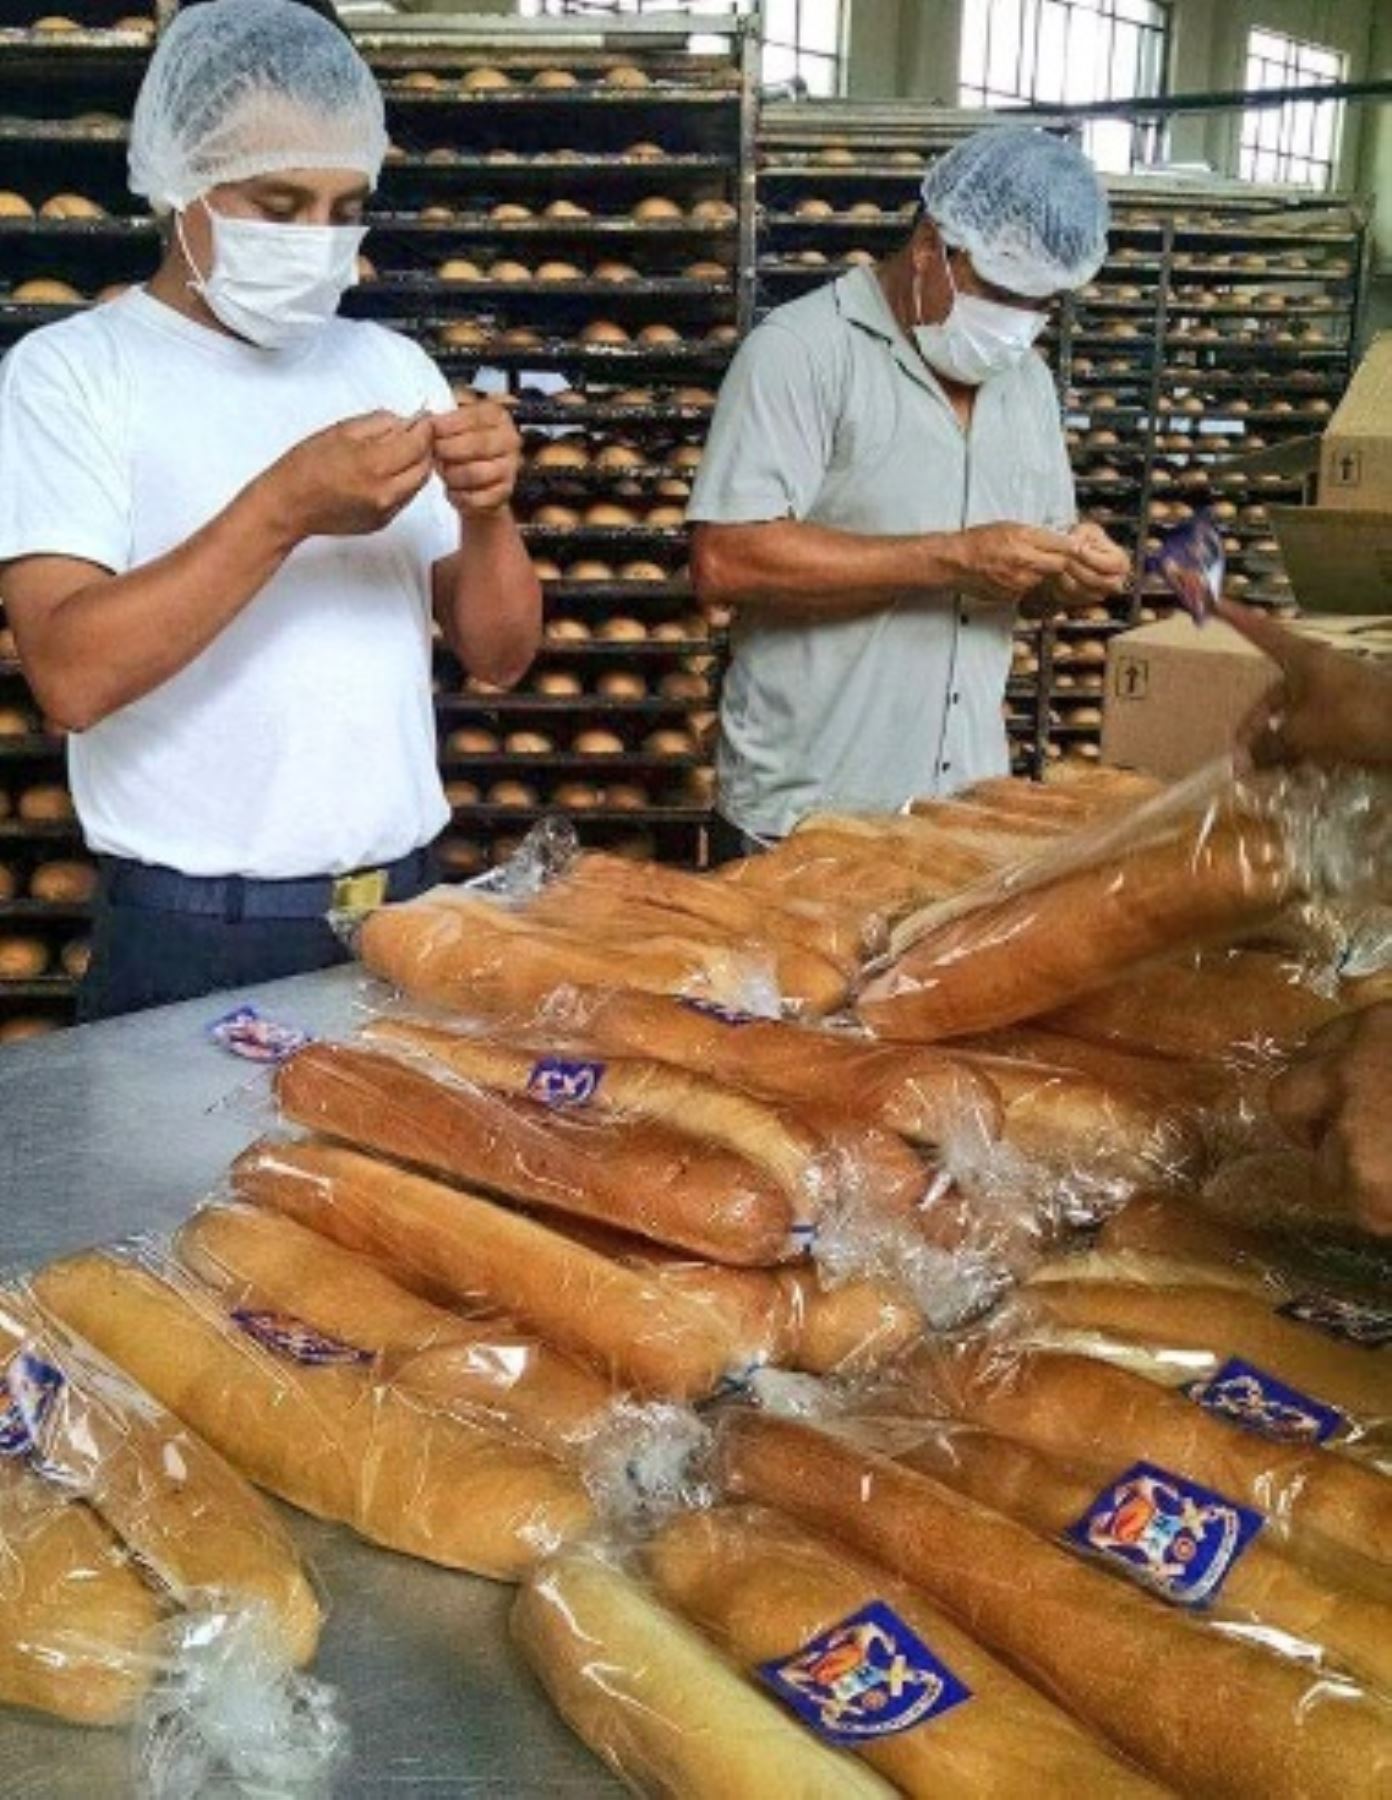 Costo del pan se mantiene alto pese a baja del precio del trigo